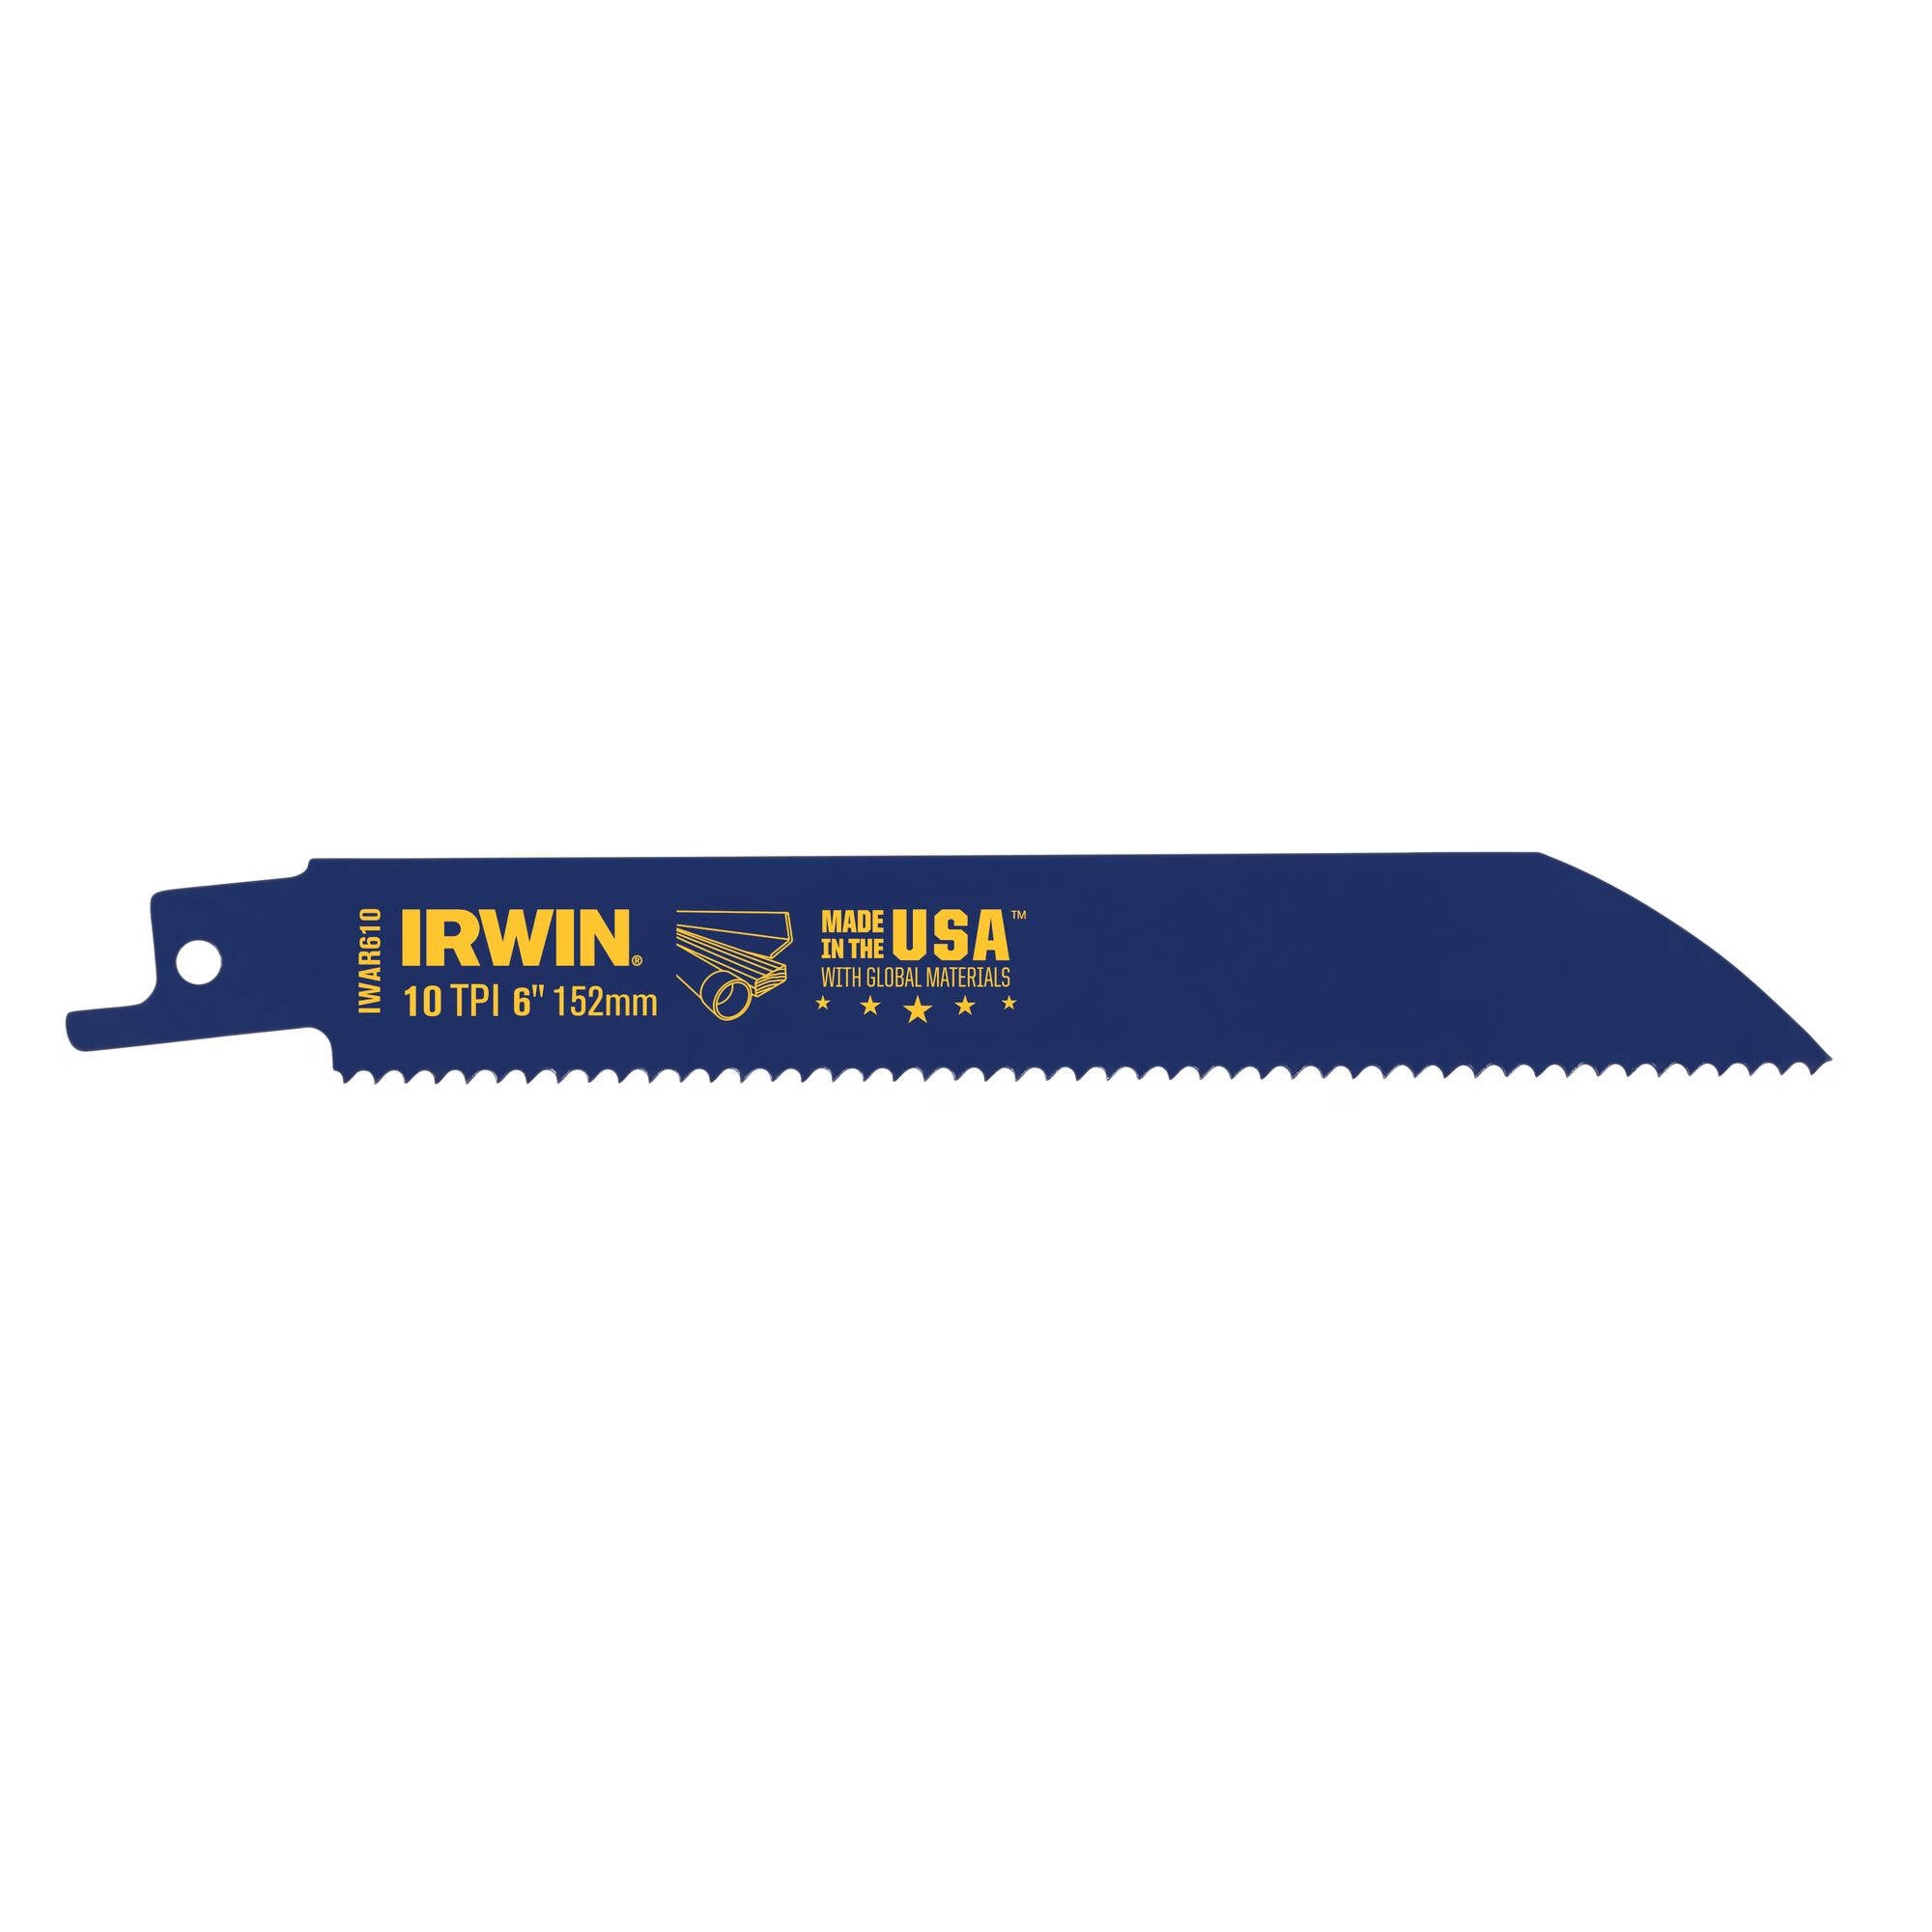 Hình ảnh 1 của mặt hàng Lưỡi cưa kiếm Bi-metal 10TPI 6" cắt gỗ và kim loại Irwin